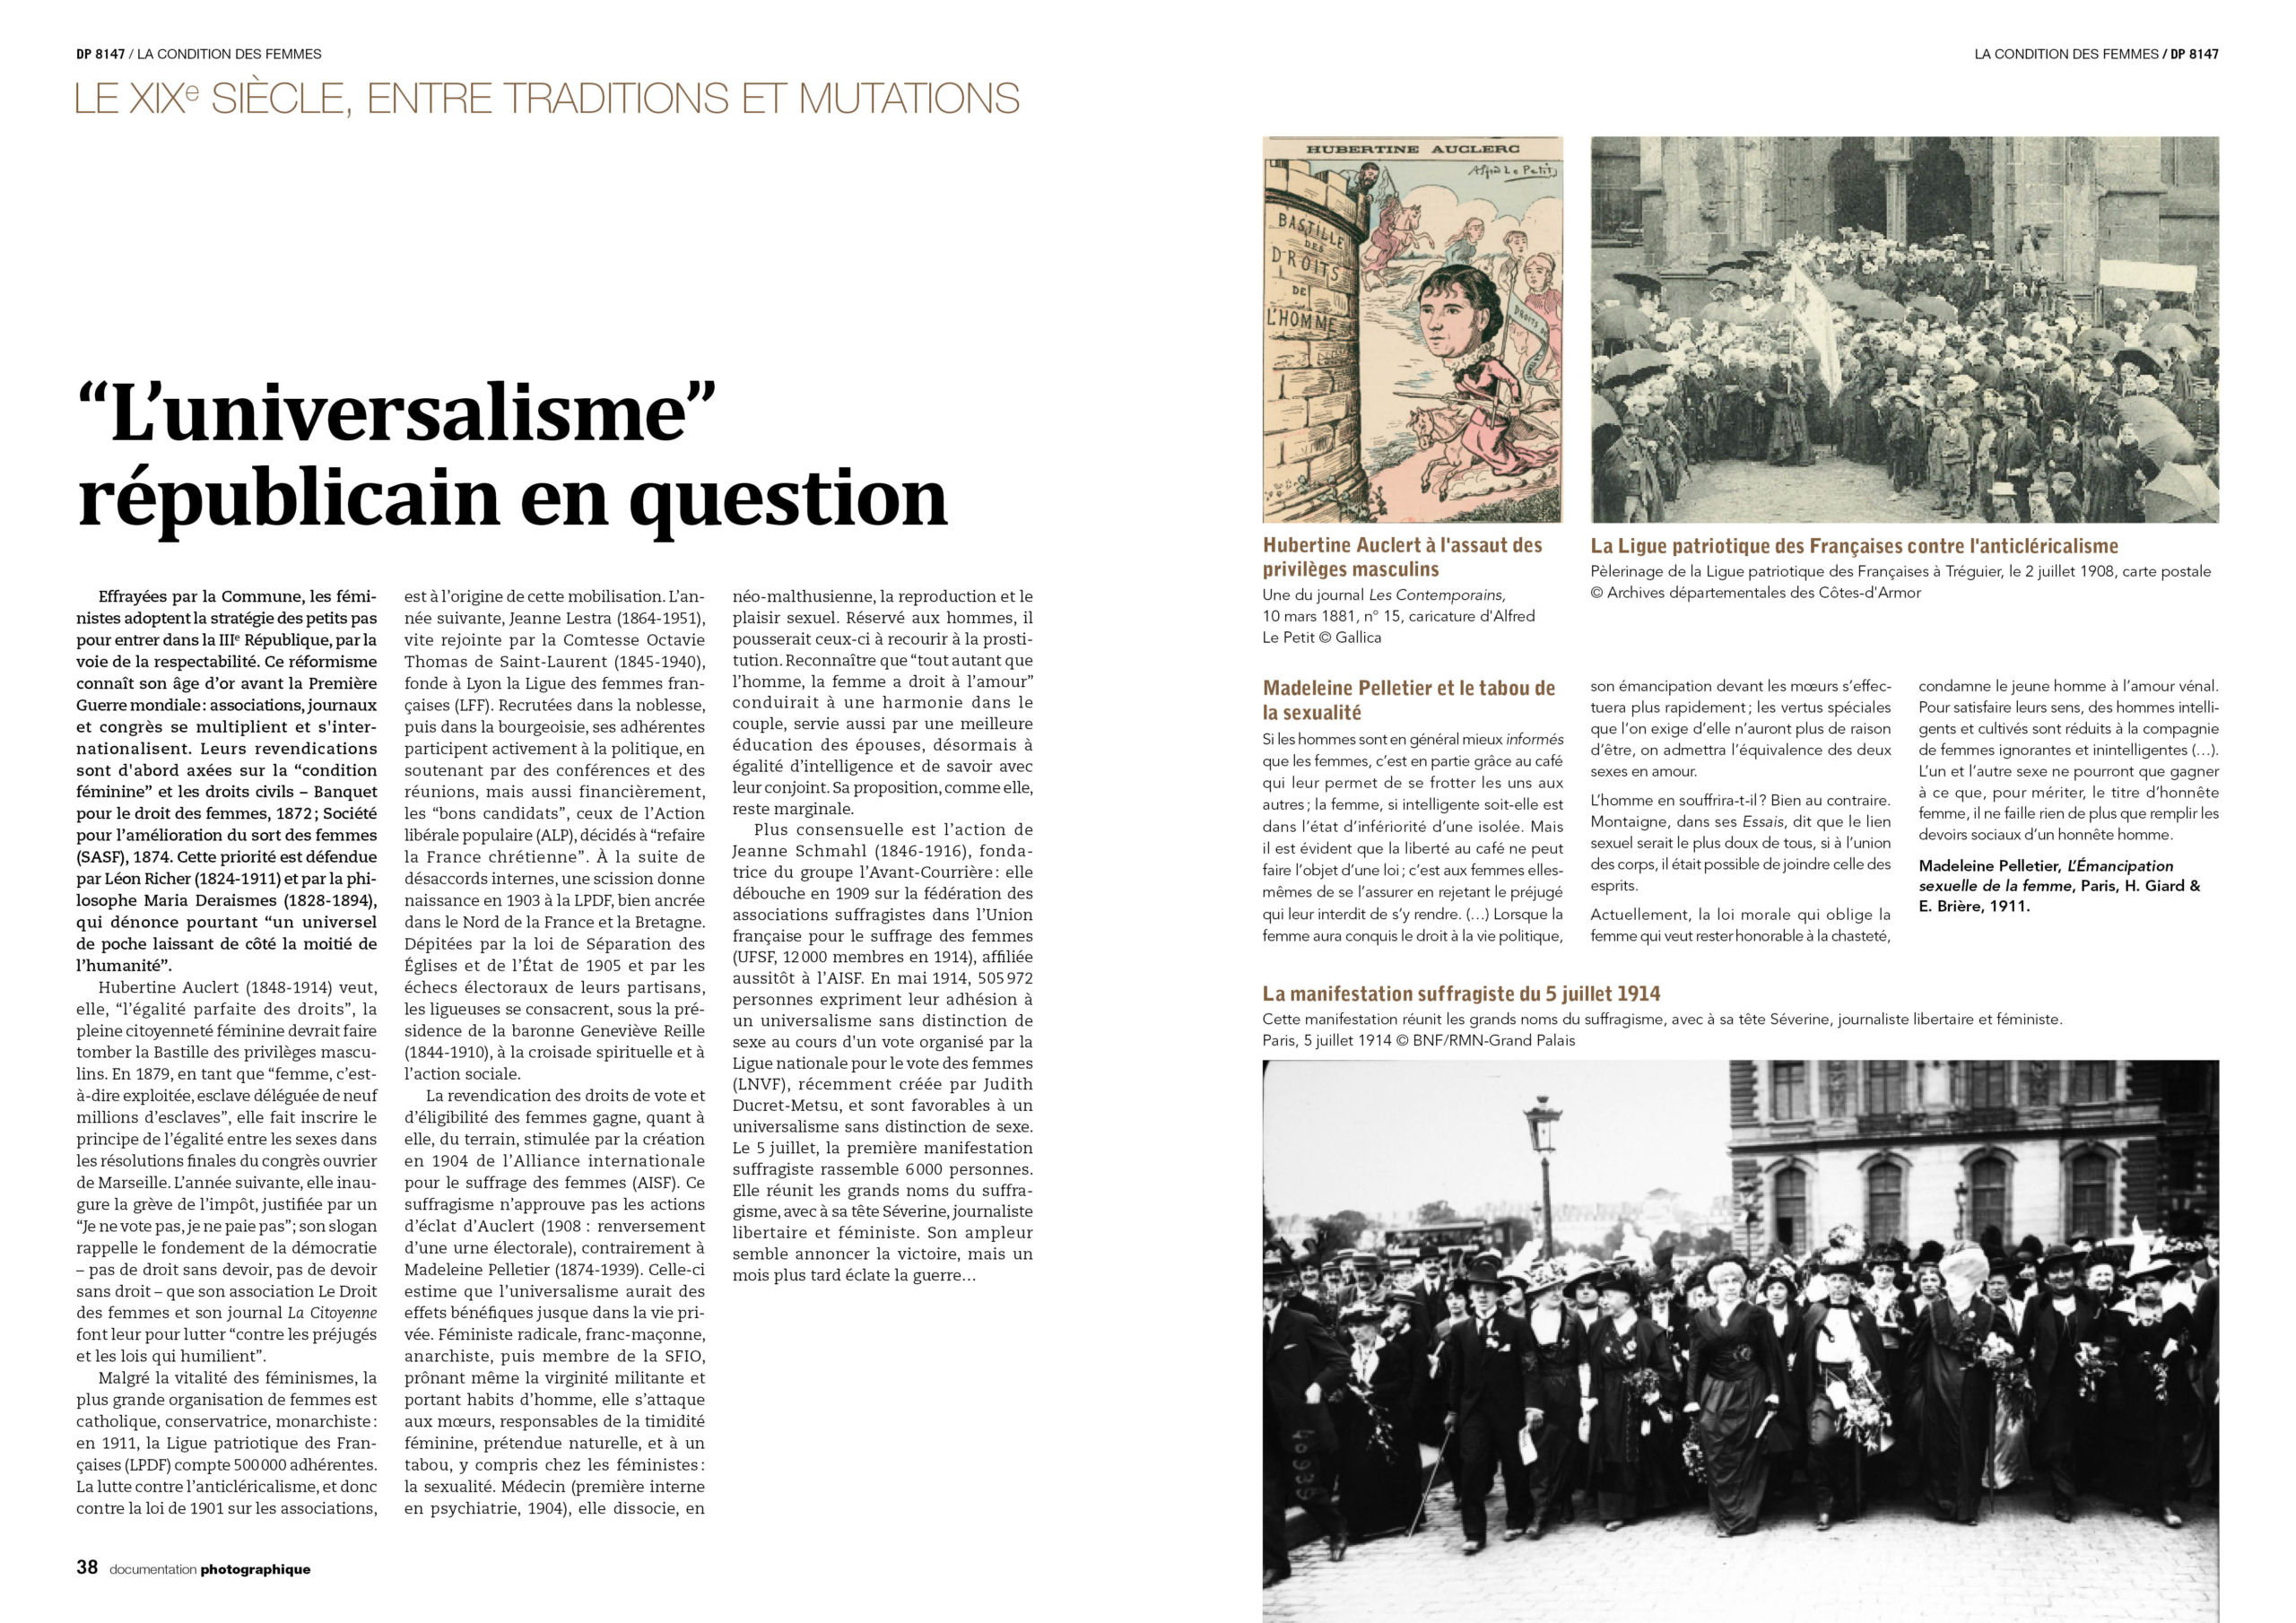 ""L'Universalisme" républicain en question" pp. 38-39